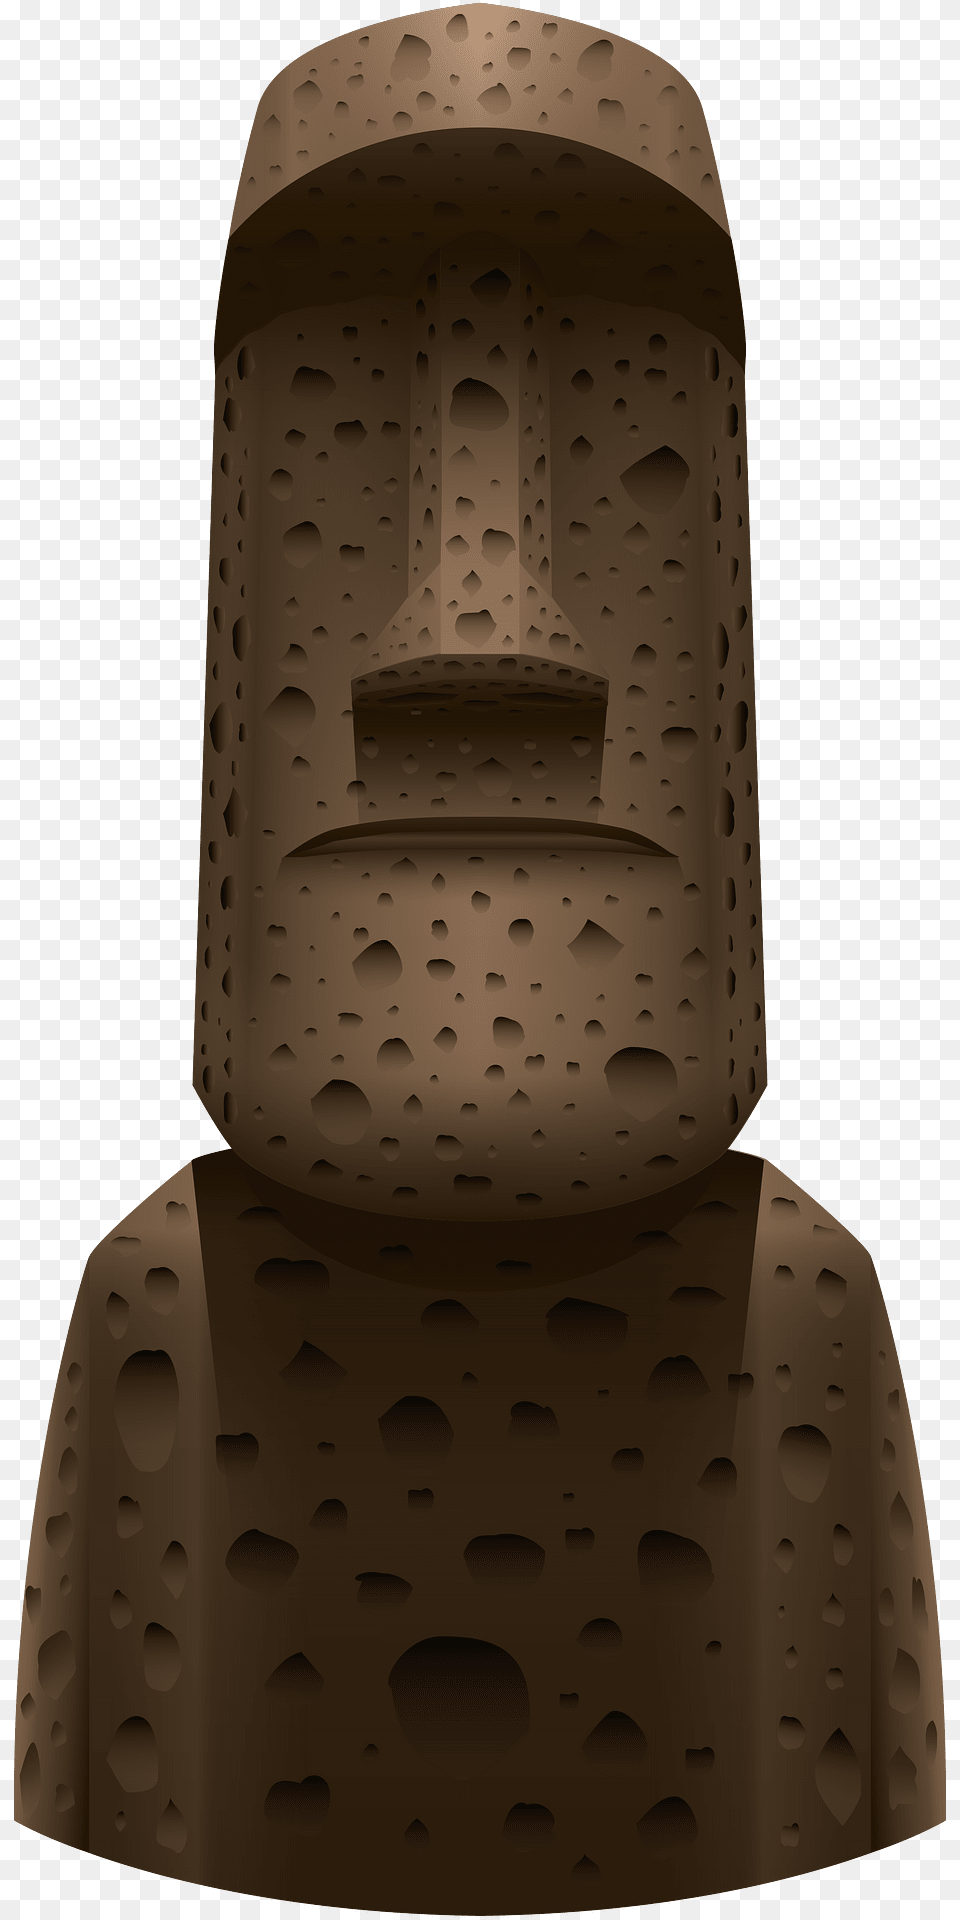 Moai Clipart, Emblem, Symbol, Archaeology, Architecture Png Image